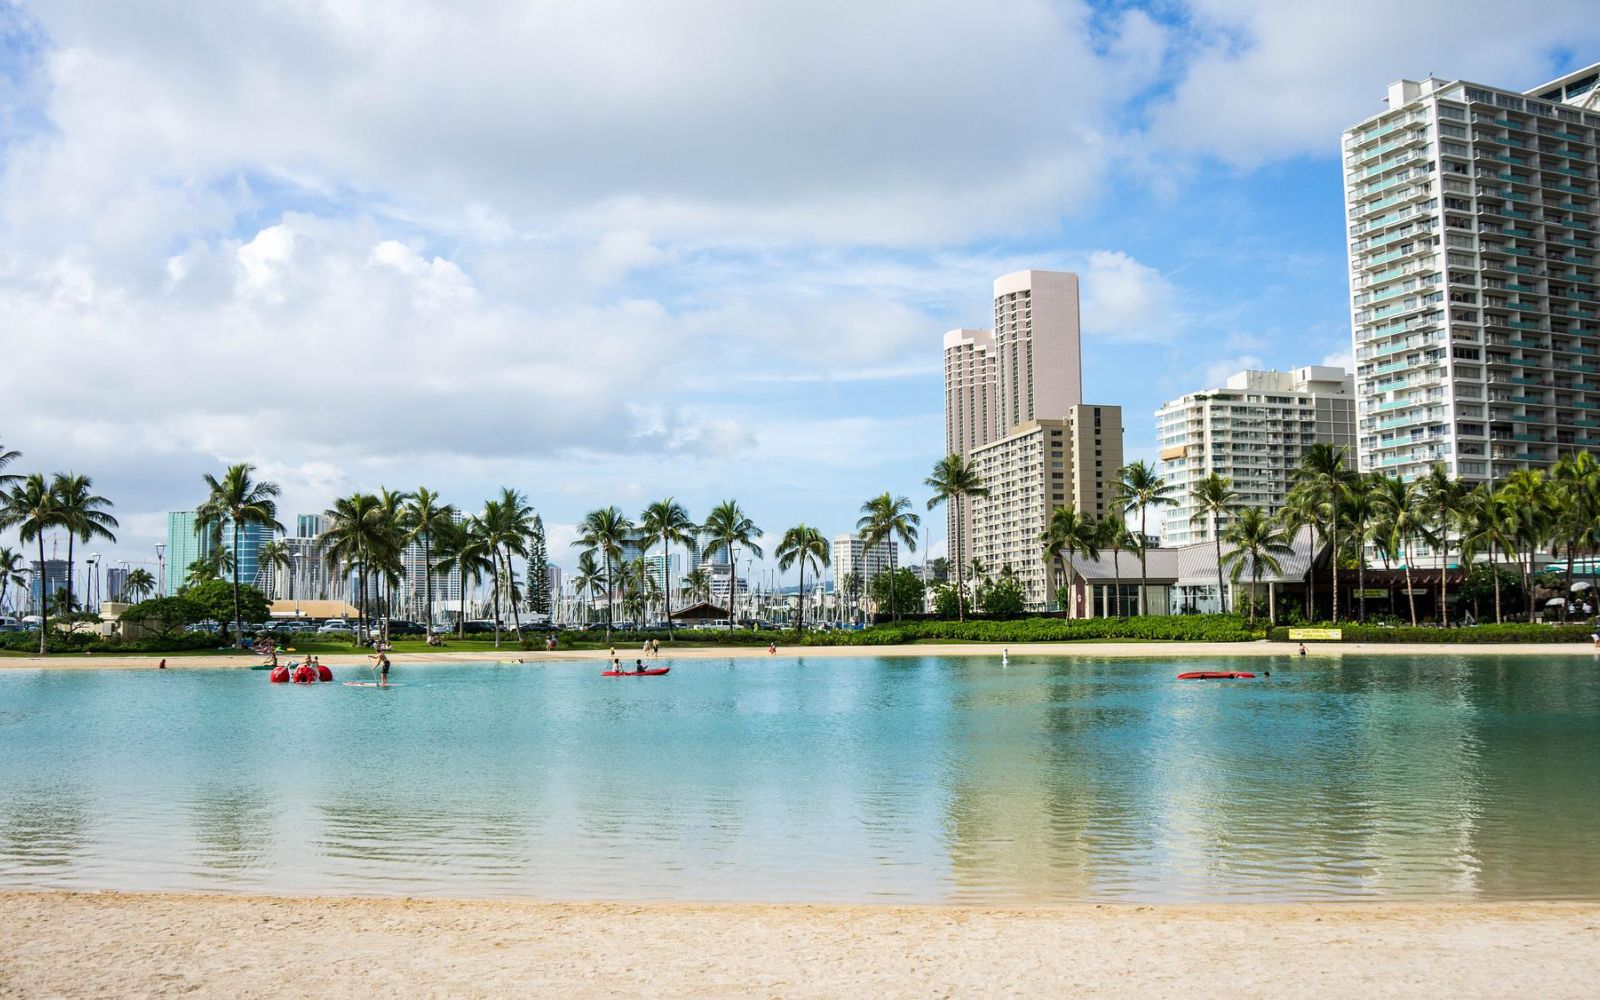 Una tra le mete più suggestive e sognate dai turisti è senz’altro Oahu, la terza isola per estensione dell’arcipelago delle Hawaii. Dal mare cristallino e dal clima caldo e temperato, è Oahu ad ospitare la capitale Honolulu e la famosa Pearl Harbor.  Di o